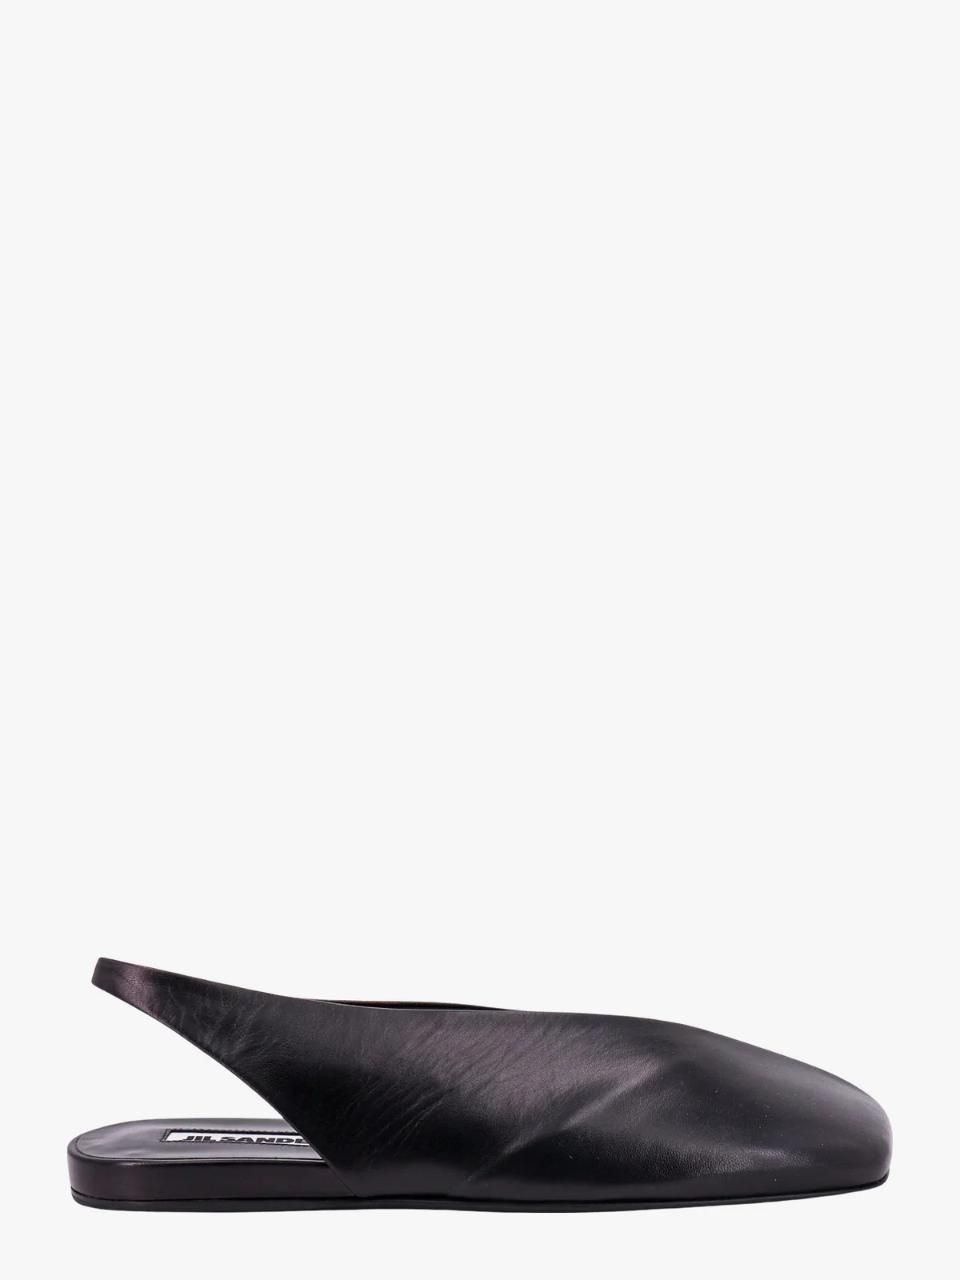 Jil Sander Leather Slingback Ballet Flats